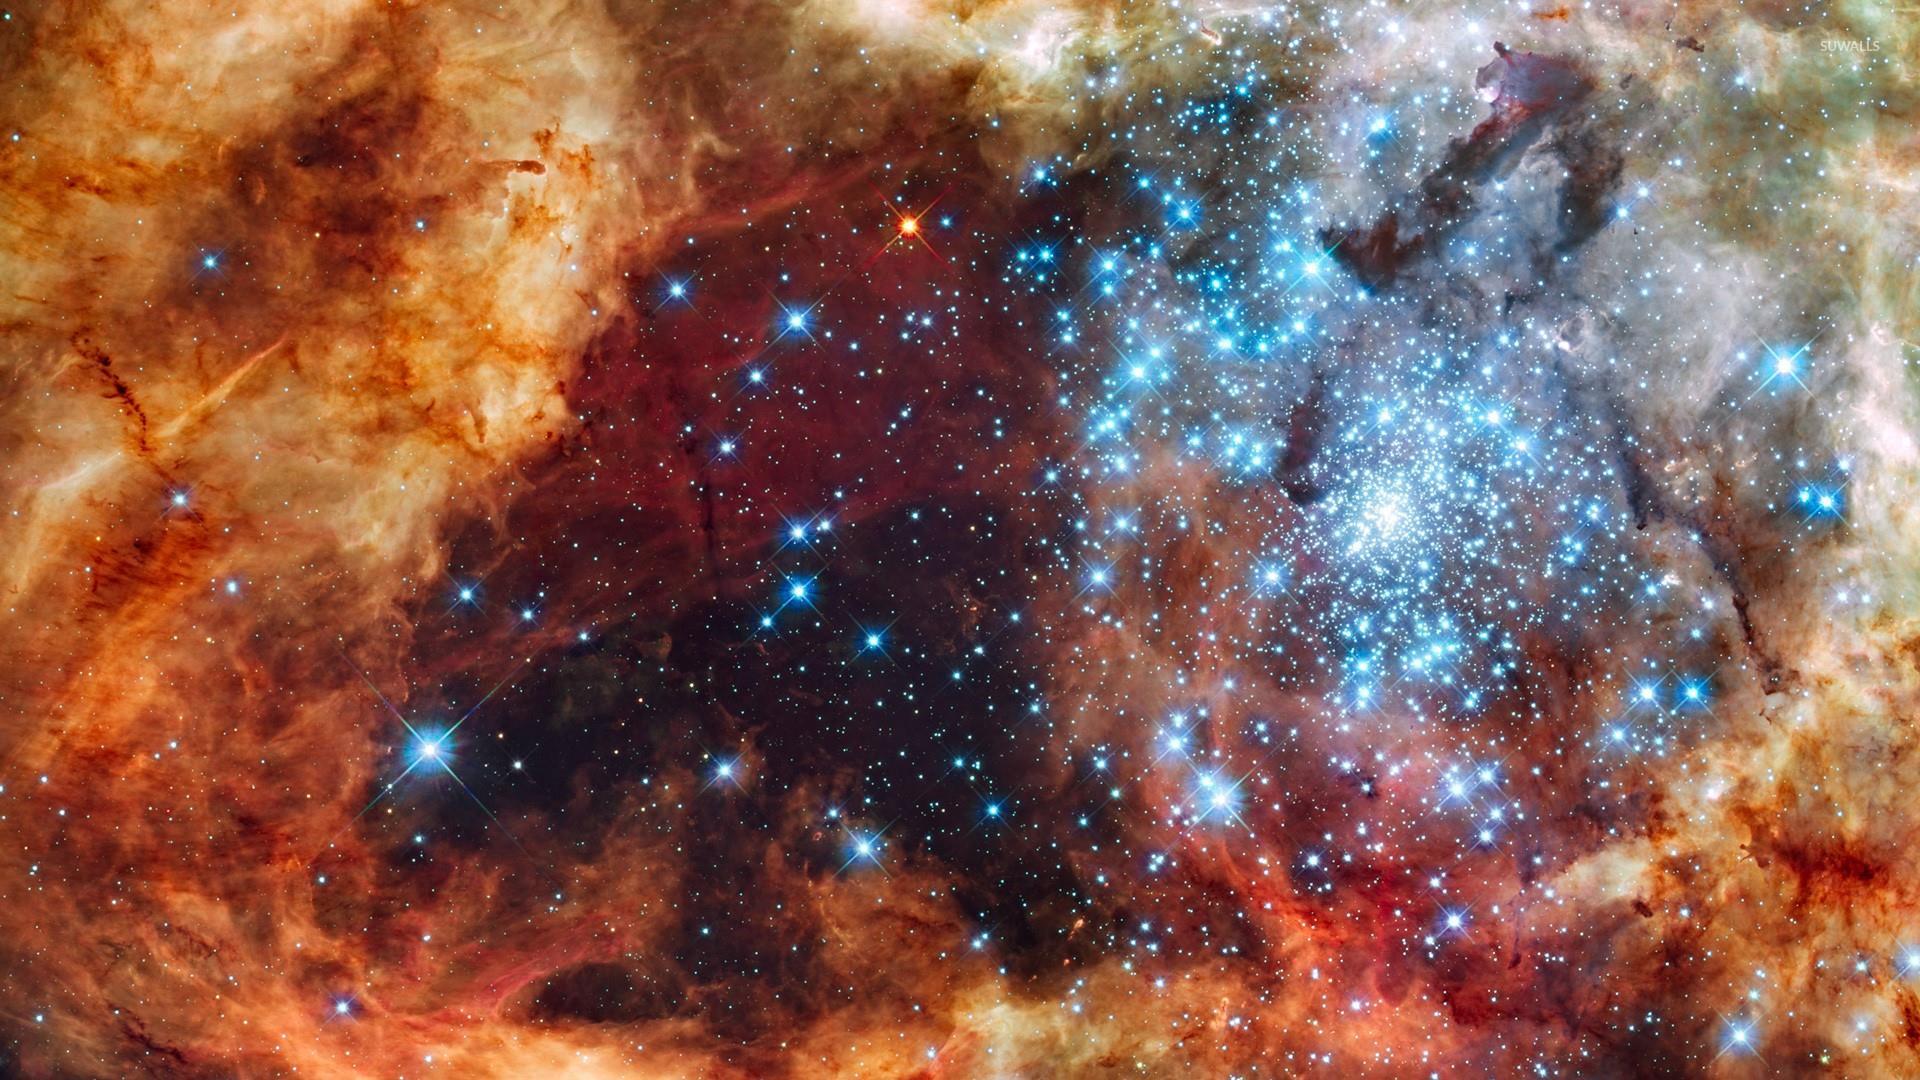 1920x1080 R136 Nhóm sao - Hình nền kính viễn vọng không gian Hubble.  Hình nền